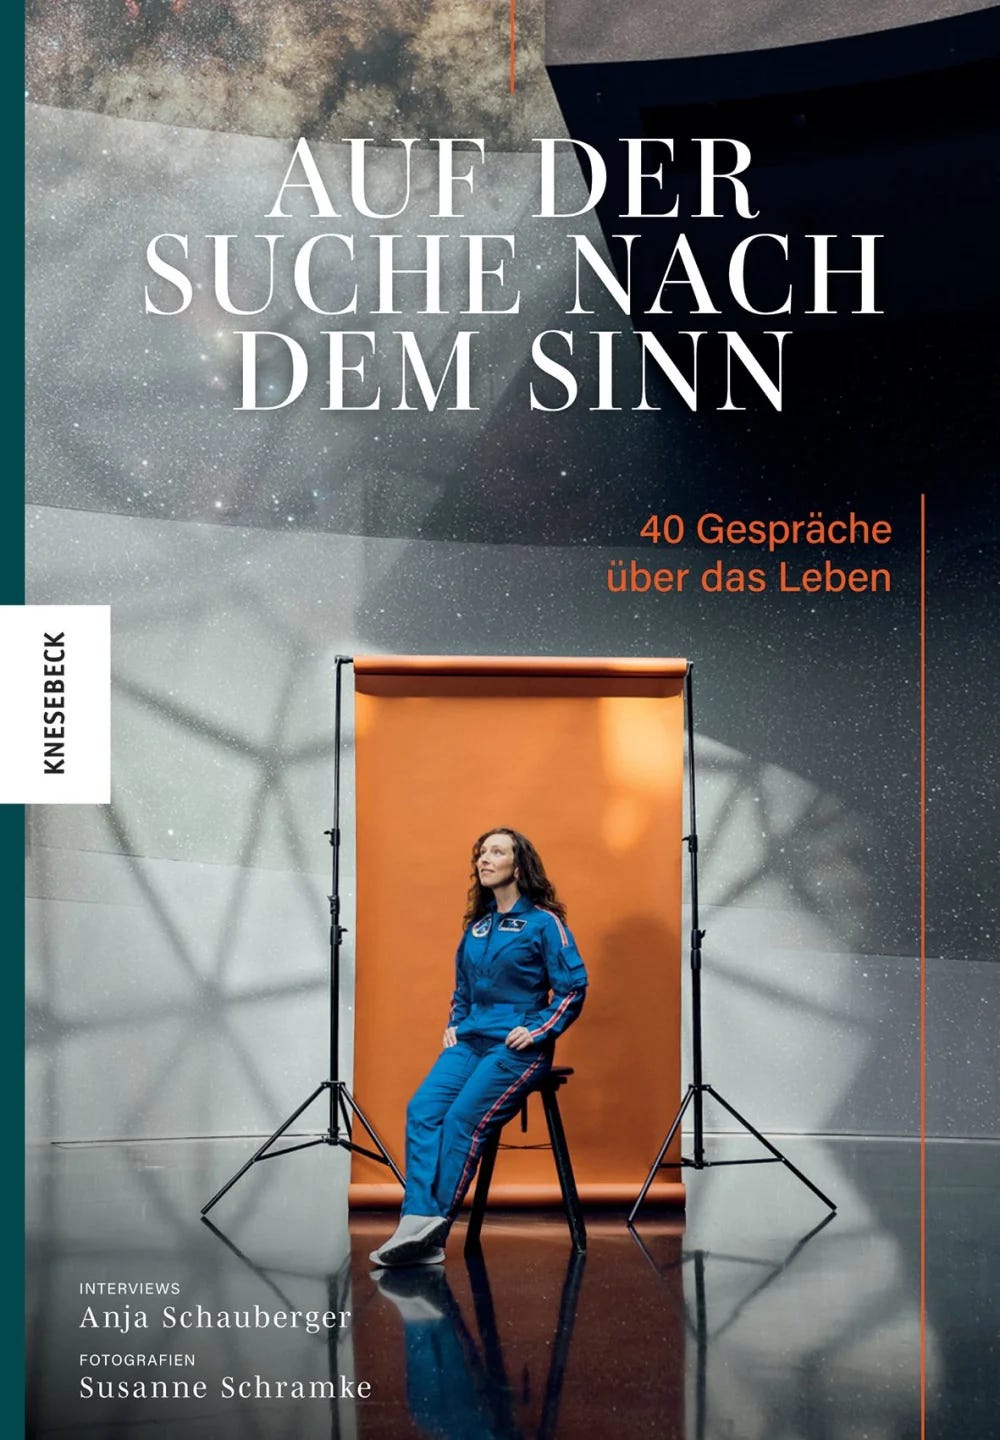 Das Cover des Buches Auf der Suche nach dem Sinn zeigt eine dunkelhaarige Frau im blauen Overall vor einer orangefarbenen Leinwand.